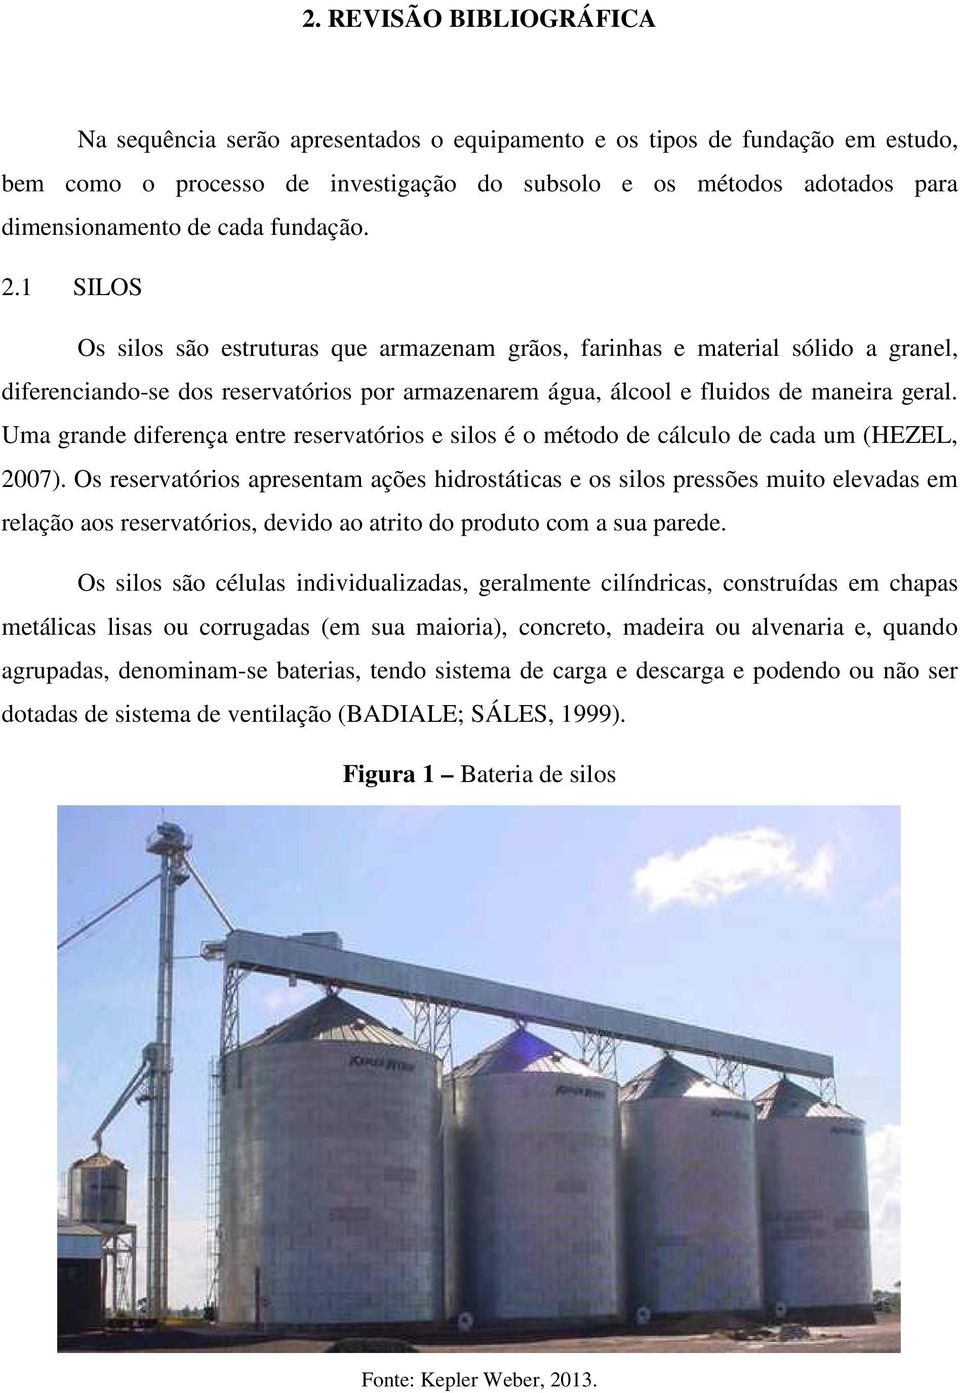 1 SILOS Os silos são estruturas que armazenam grãos, farinhas e material sólido a granel, diferenciando-se dos reservatórios por armazenarem água, álcool e fluidos de maneira geral.